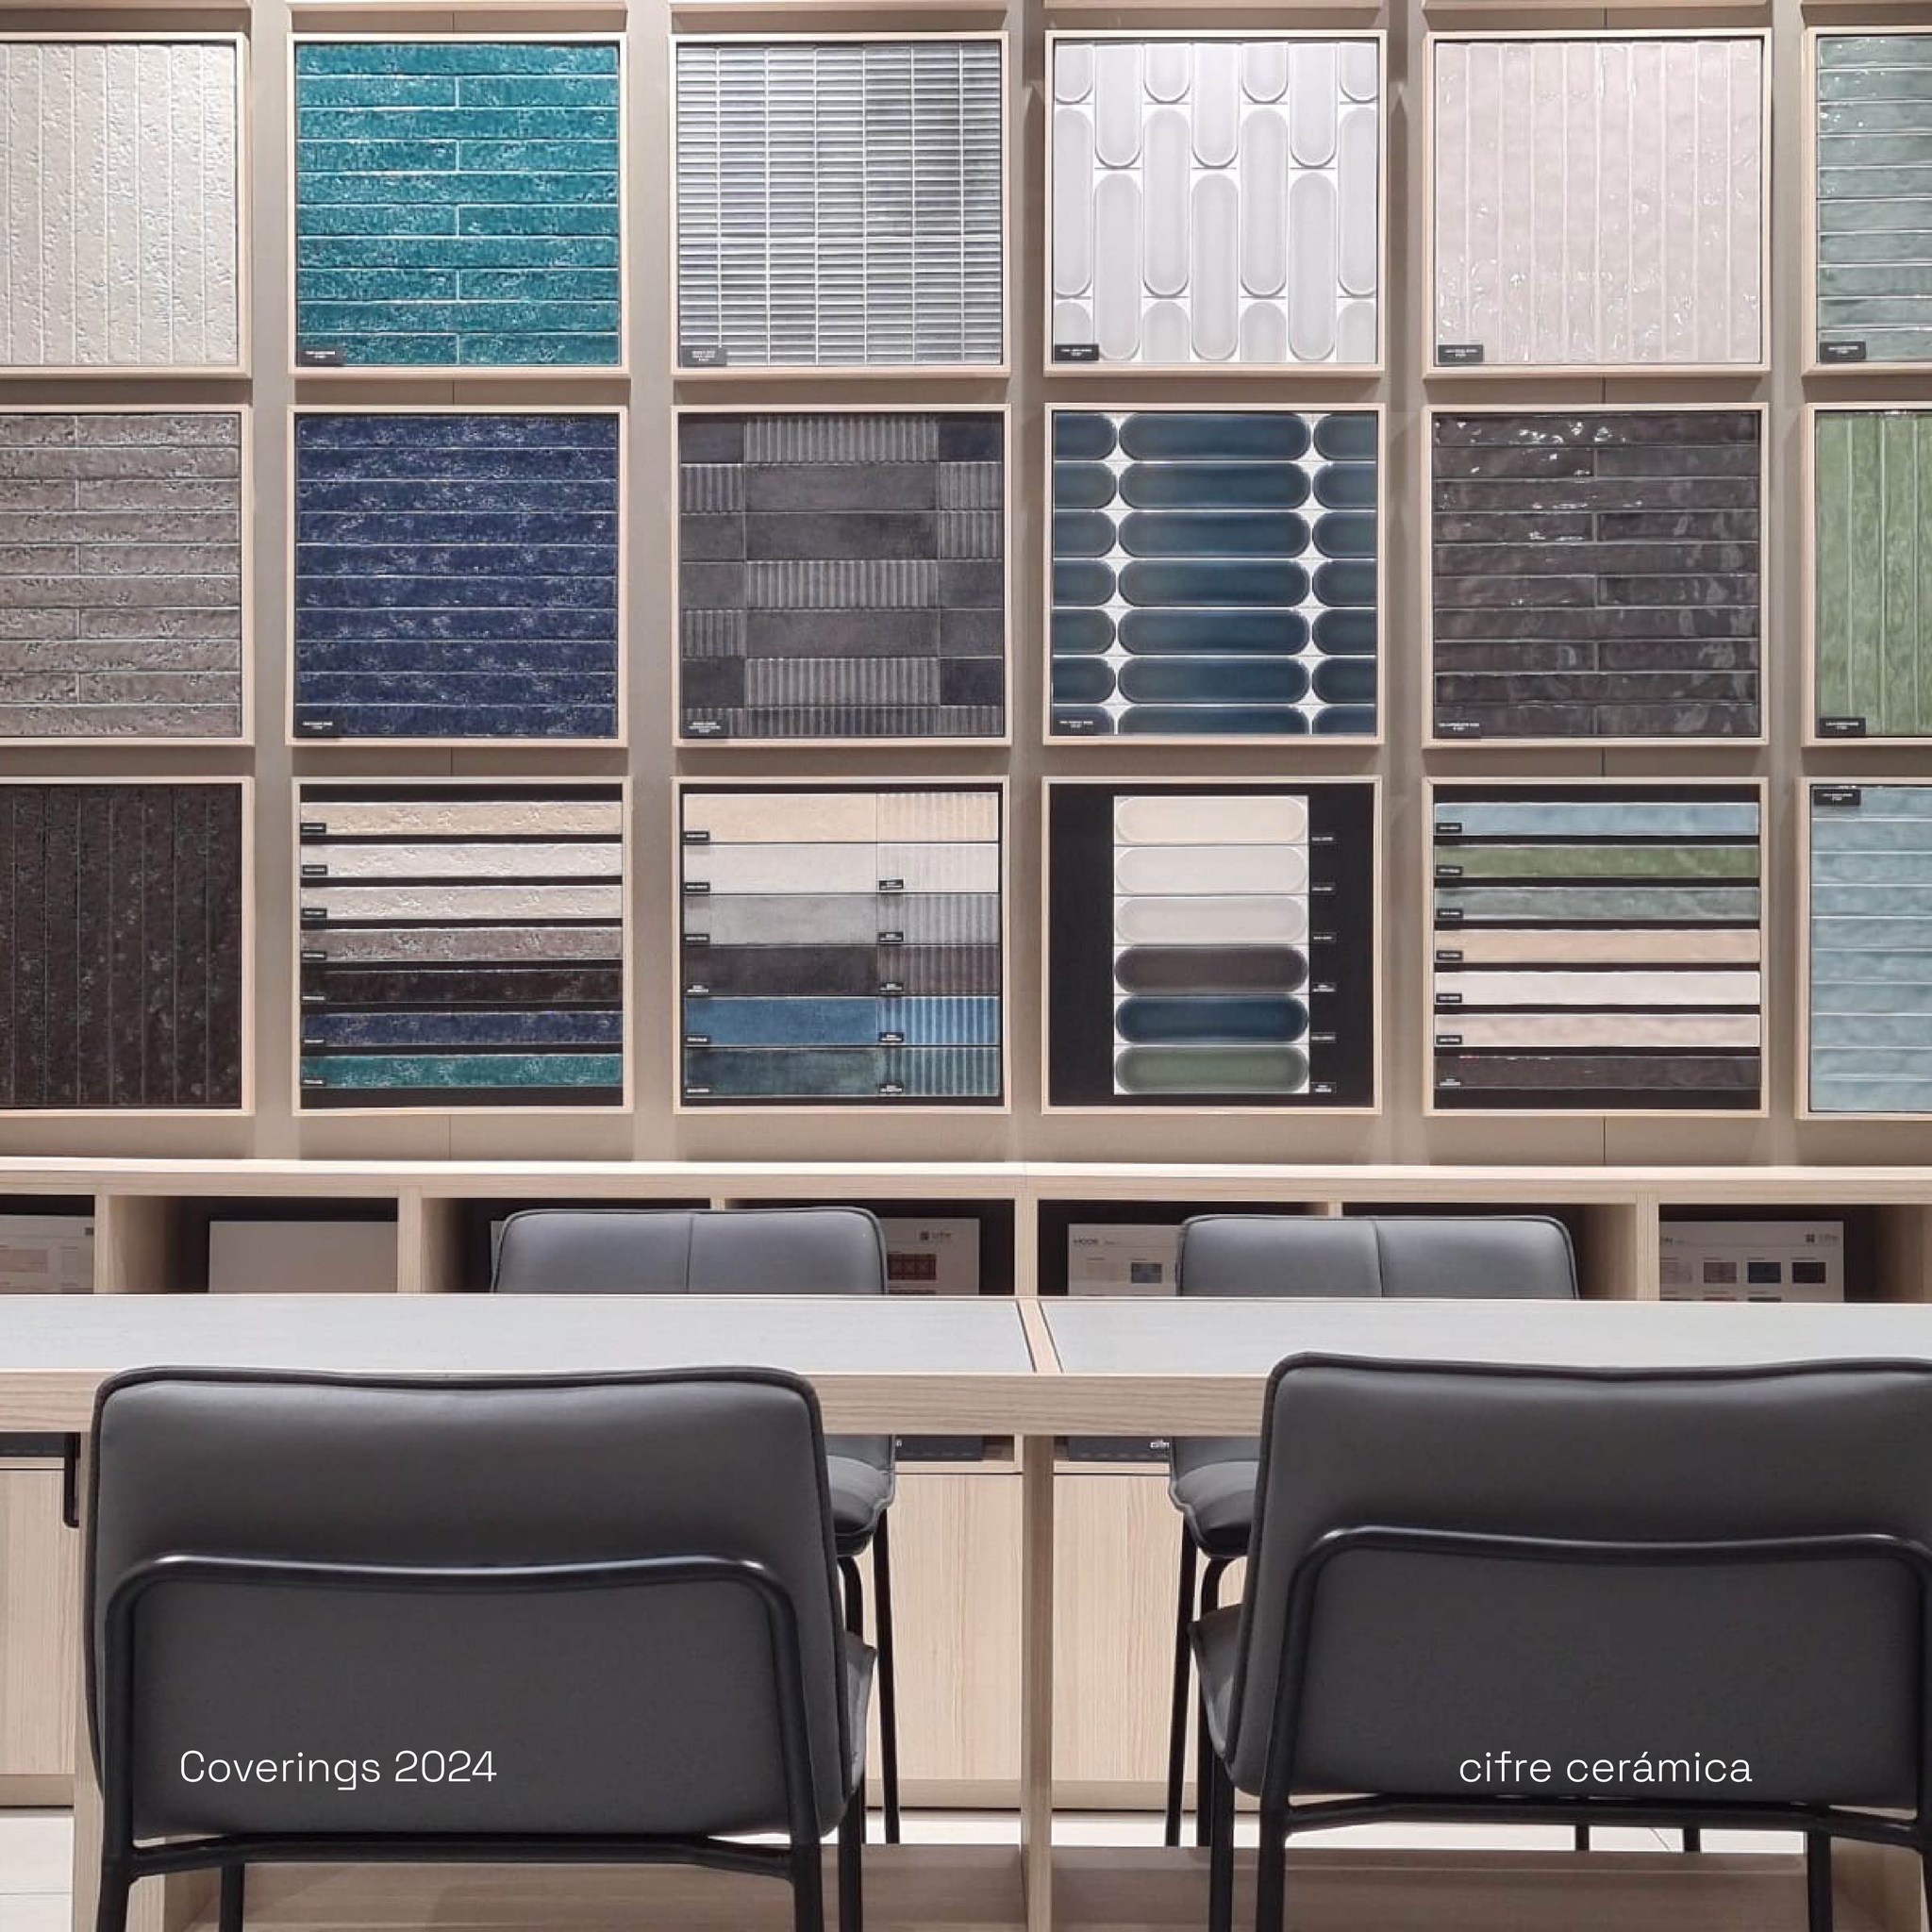 stand de Cifre Cerámica en Coverings 2024 con expositor de azulejos de pequeño formato